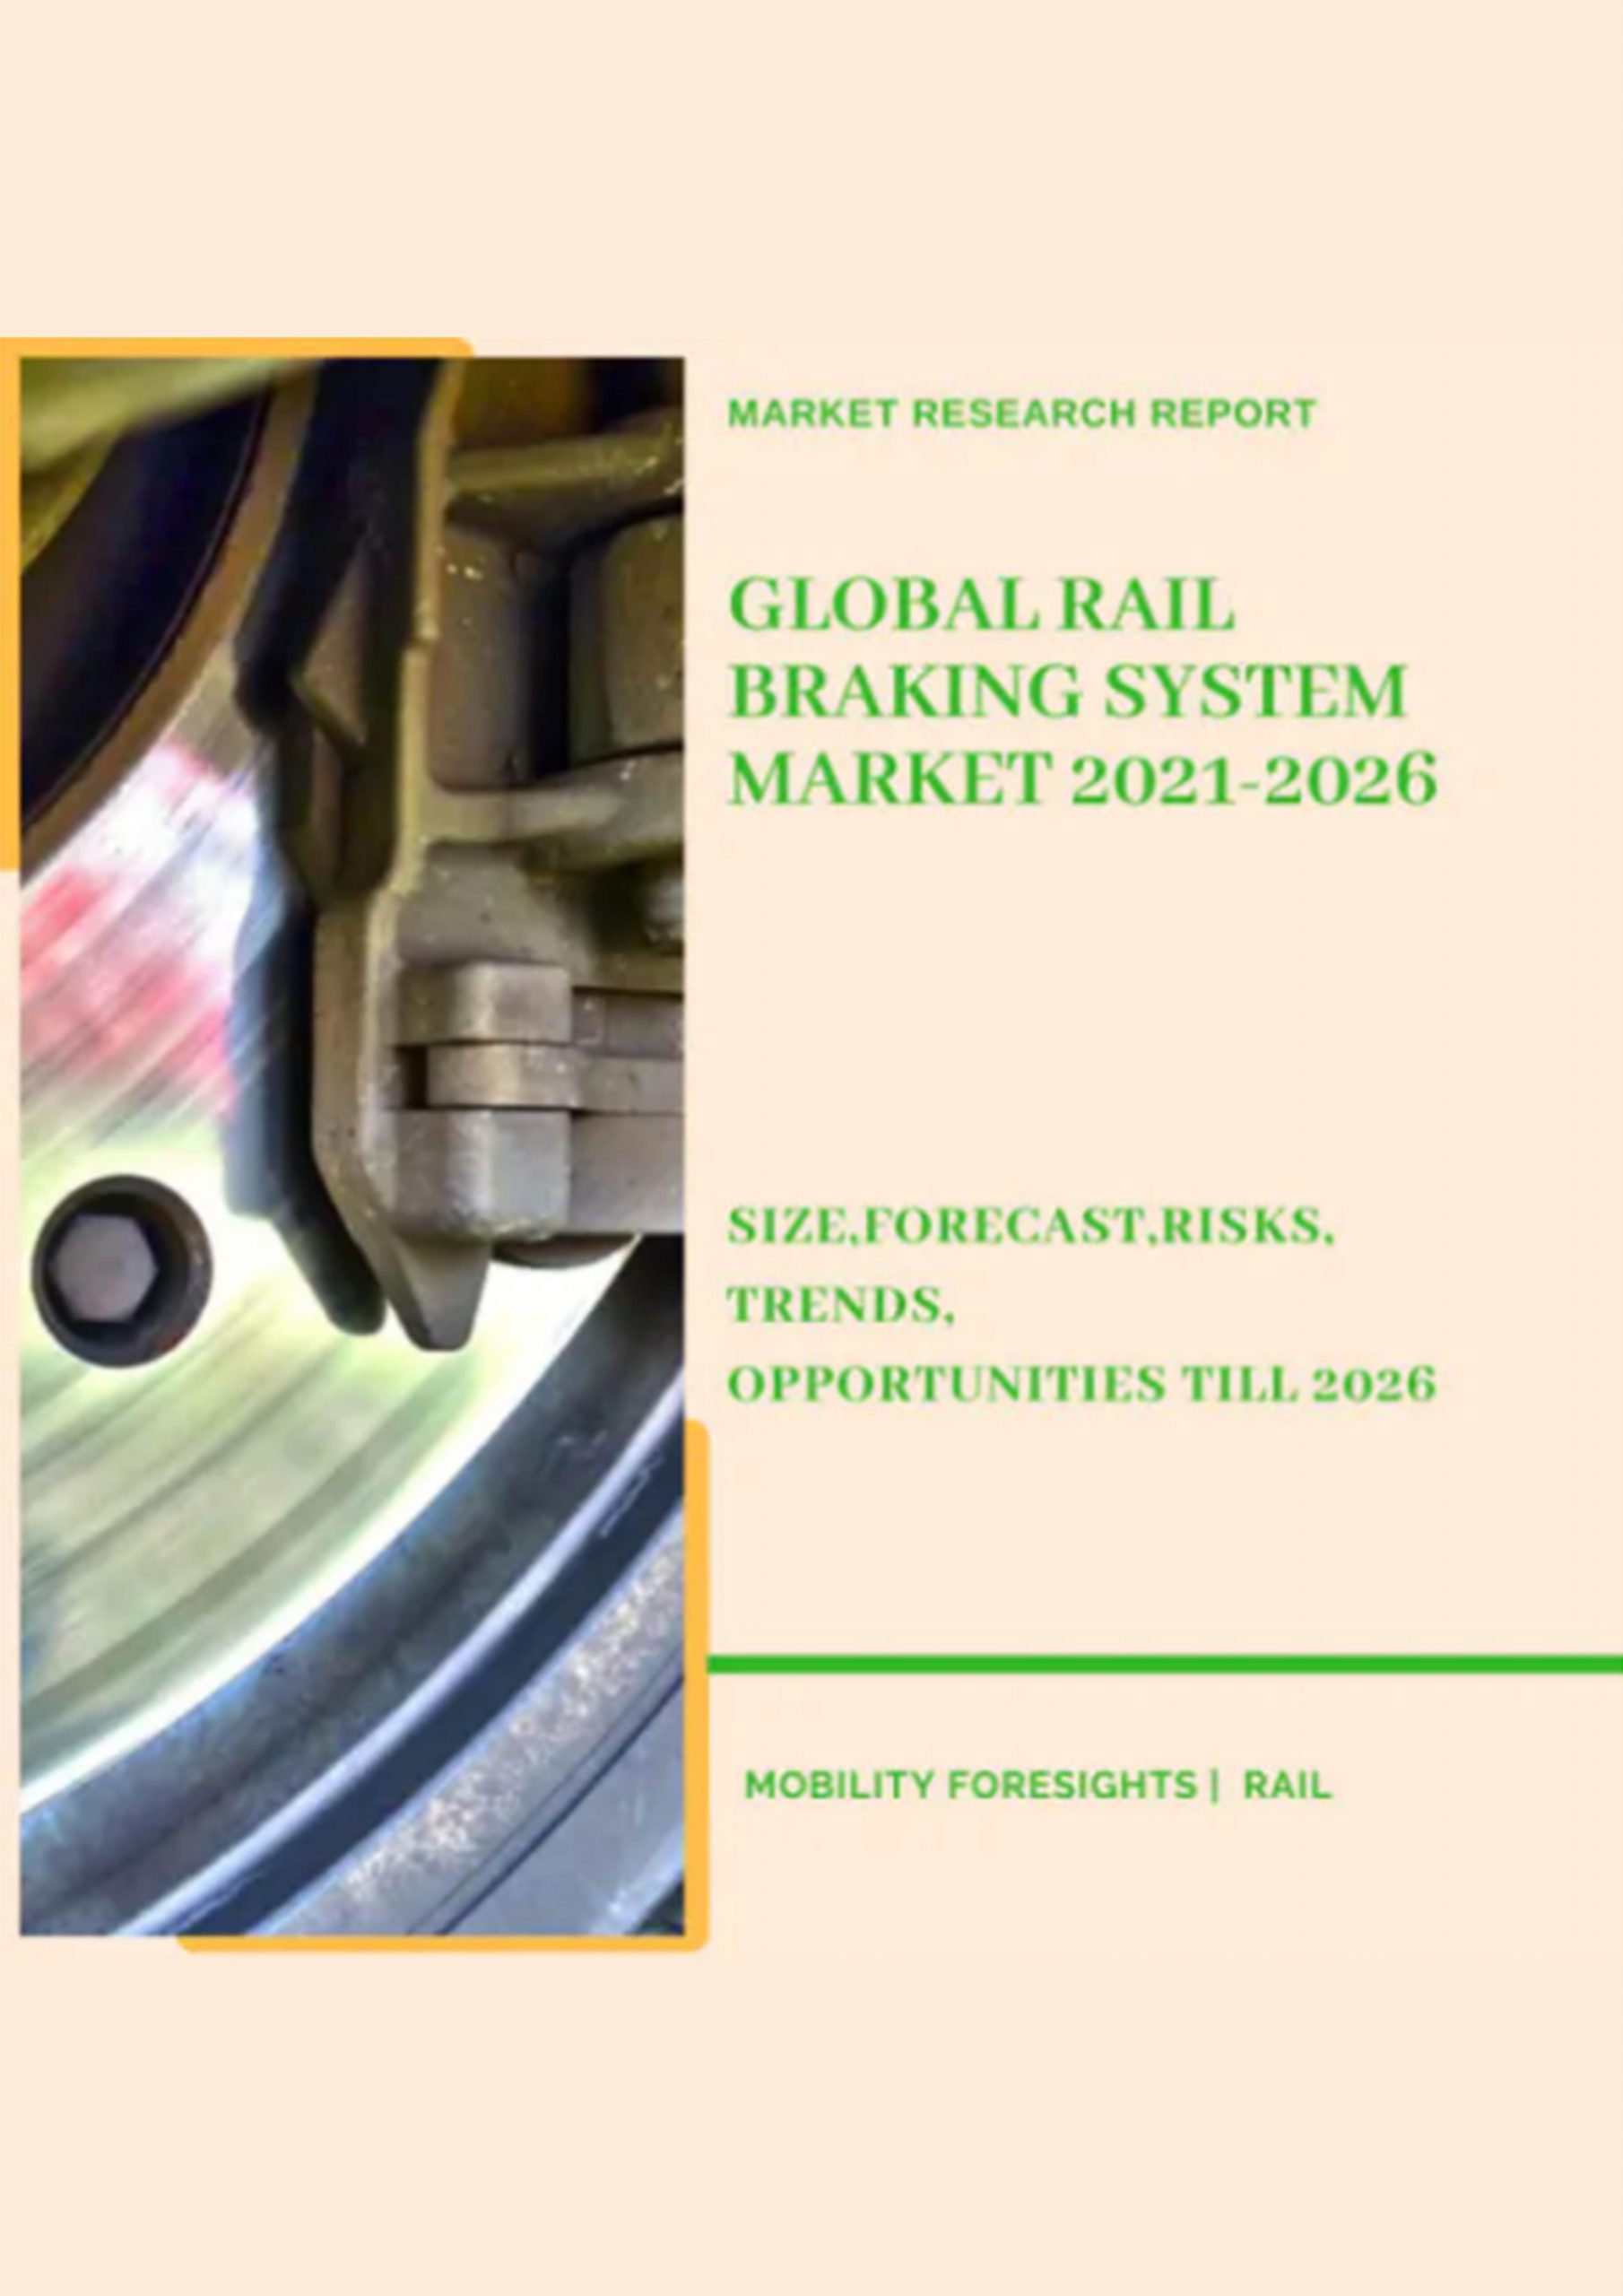 Global Rail Braking System Market 2021-2026